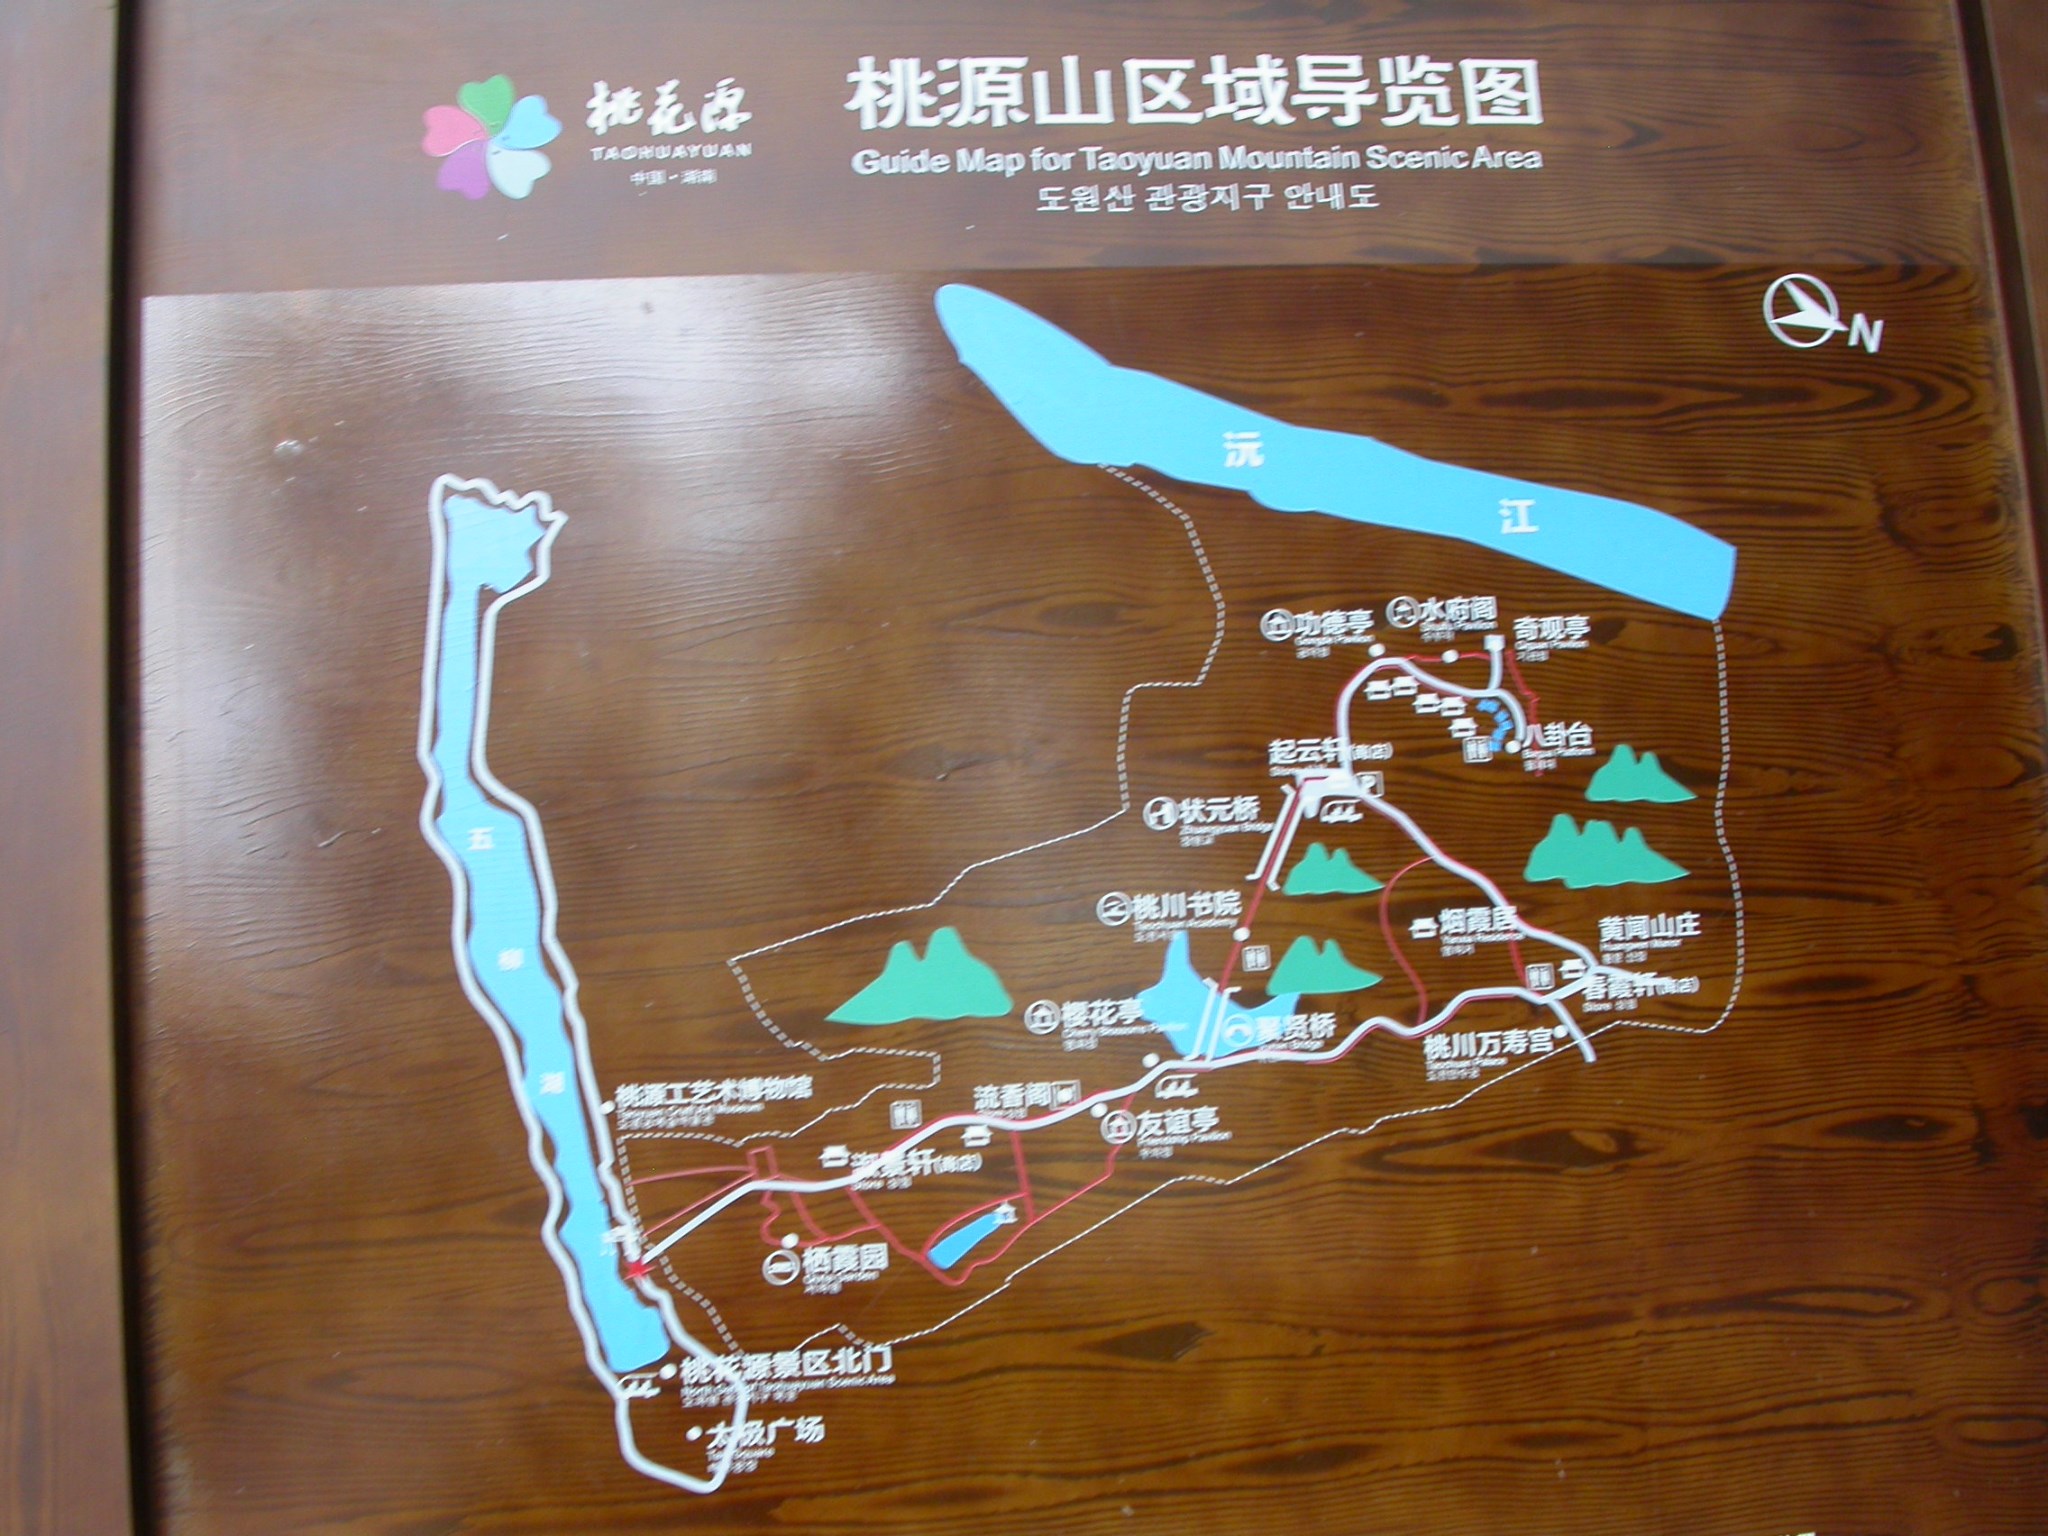 富春桃源风景区地图图片